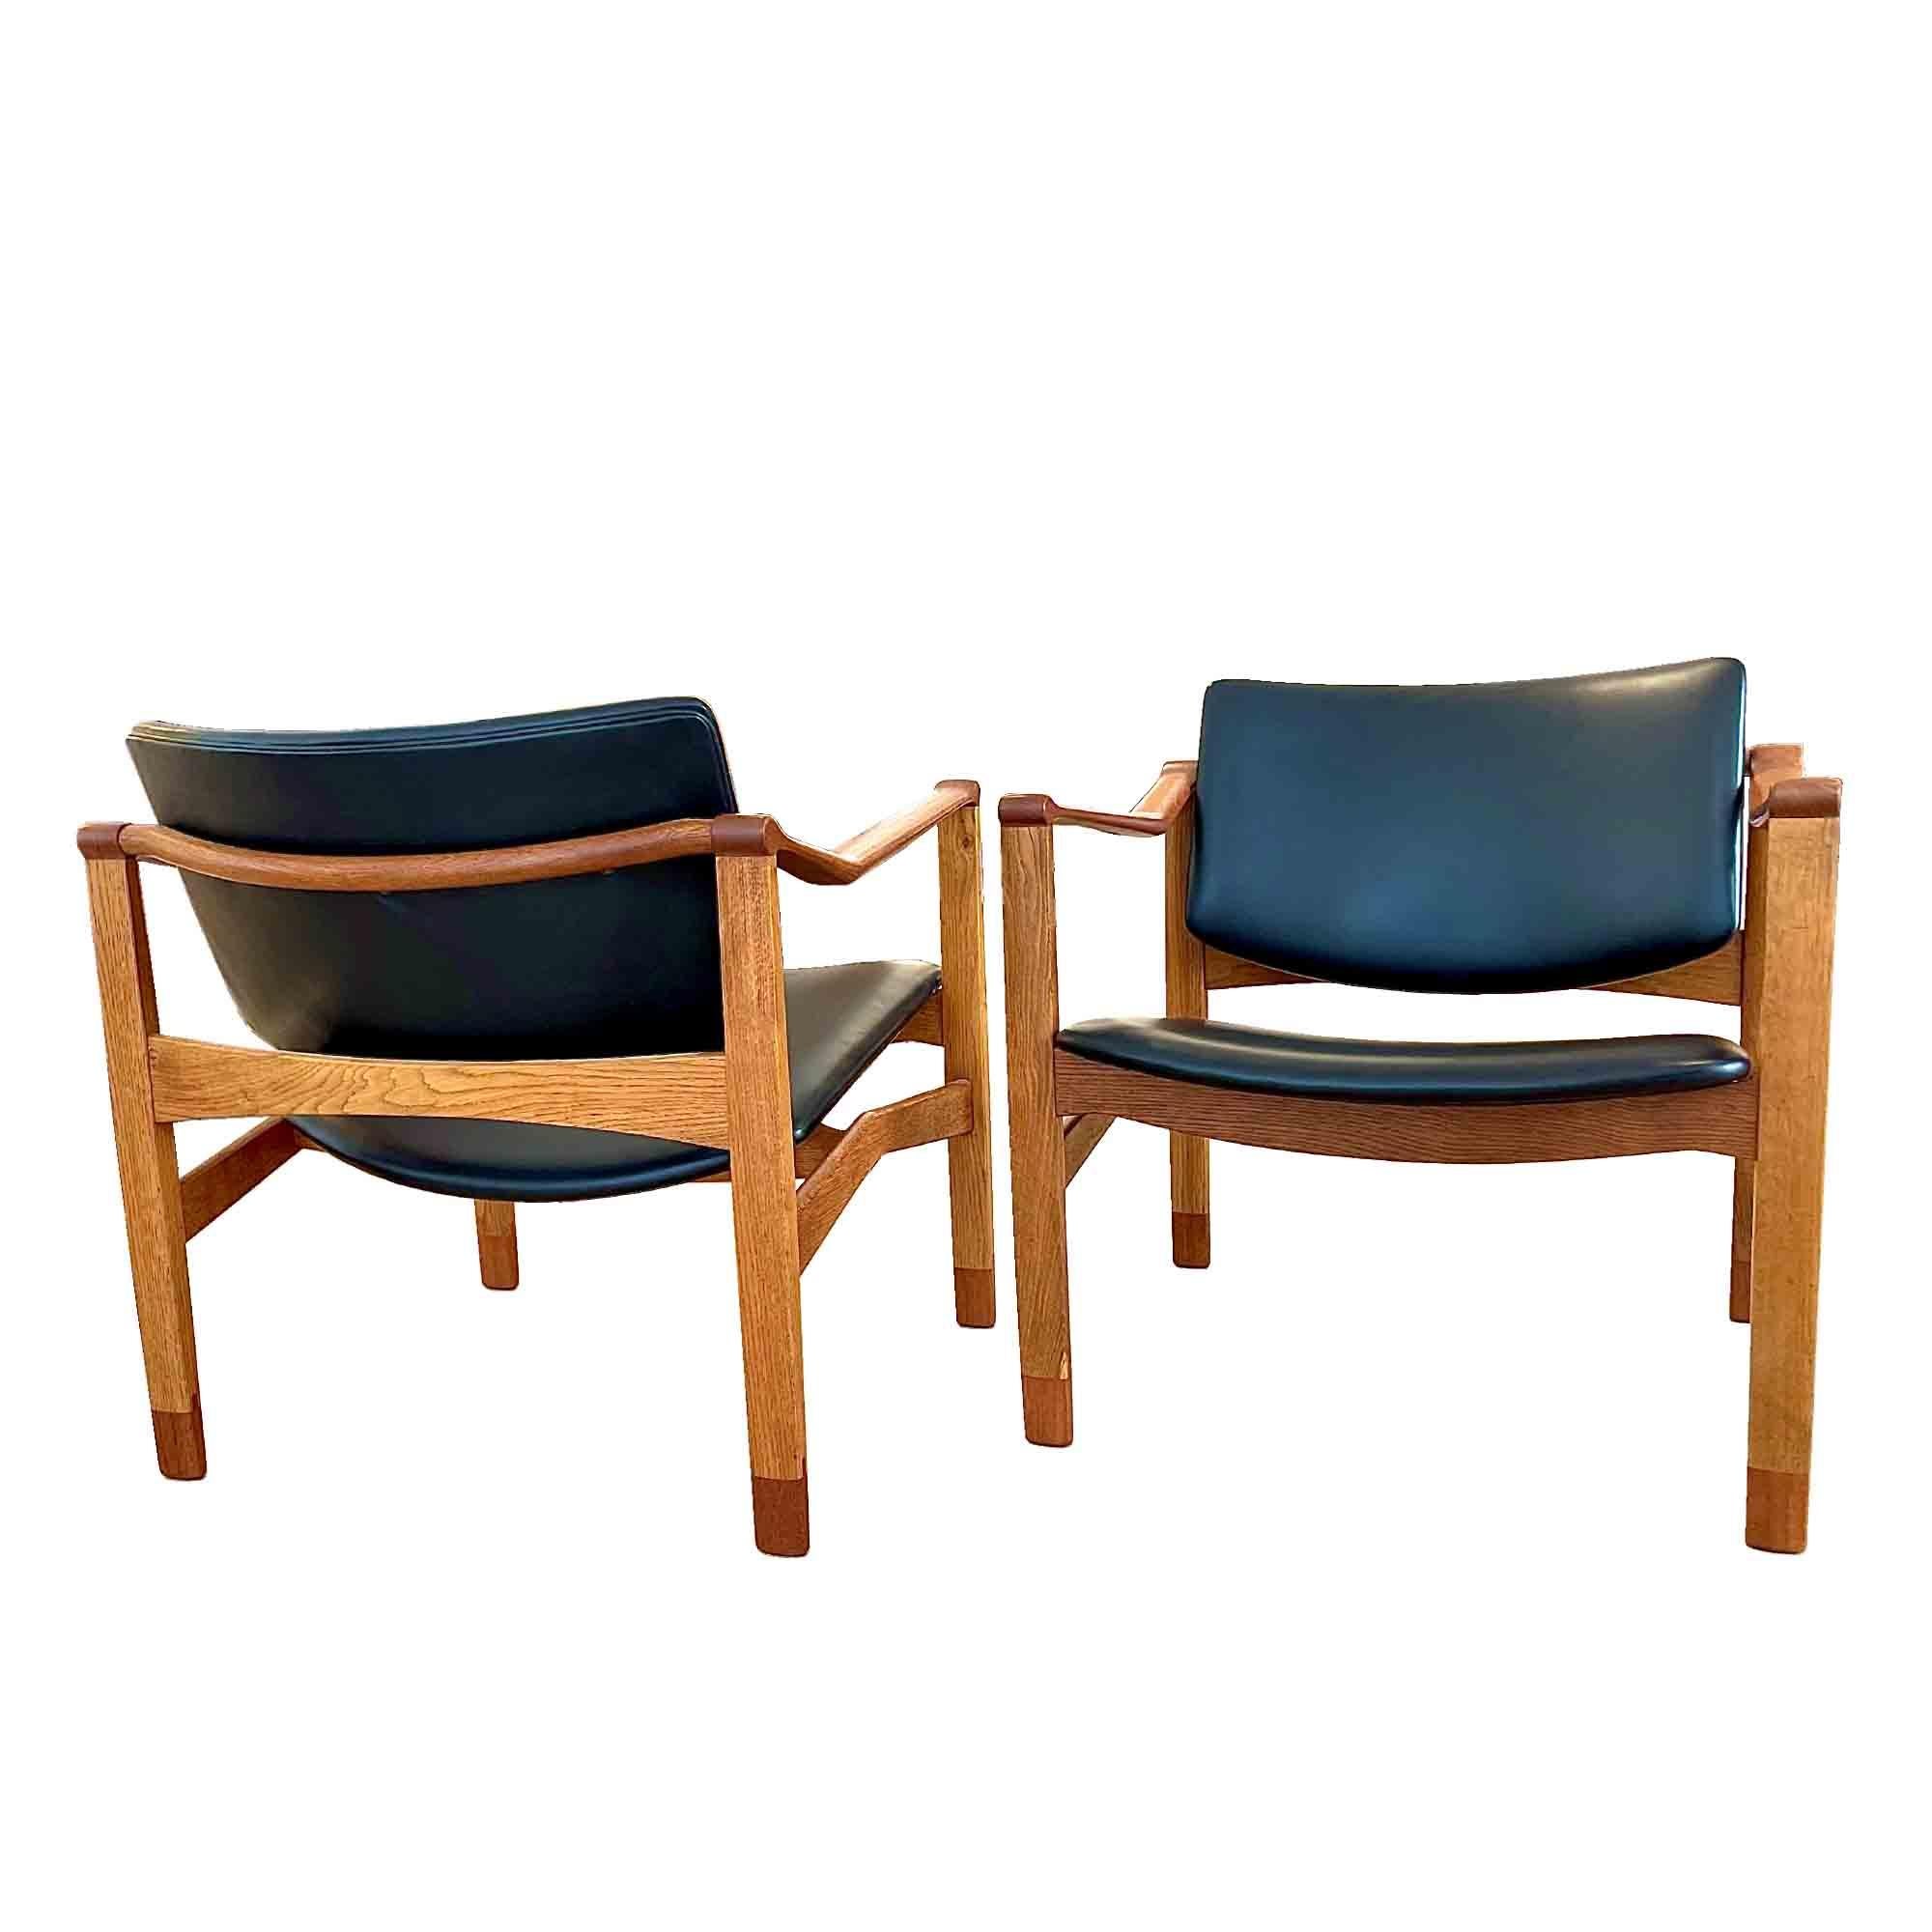 William Watting war ein amerikanischer Möbeldesigner, der in den 50er Jahren in Dänemark ansässig war und für sein eigenes Unternehmen William Watting Furniture produzierte. Seine Kreationen zeichnen sich durch ihre Einfachheit und die